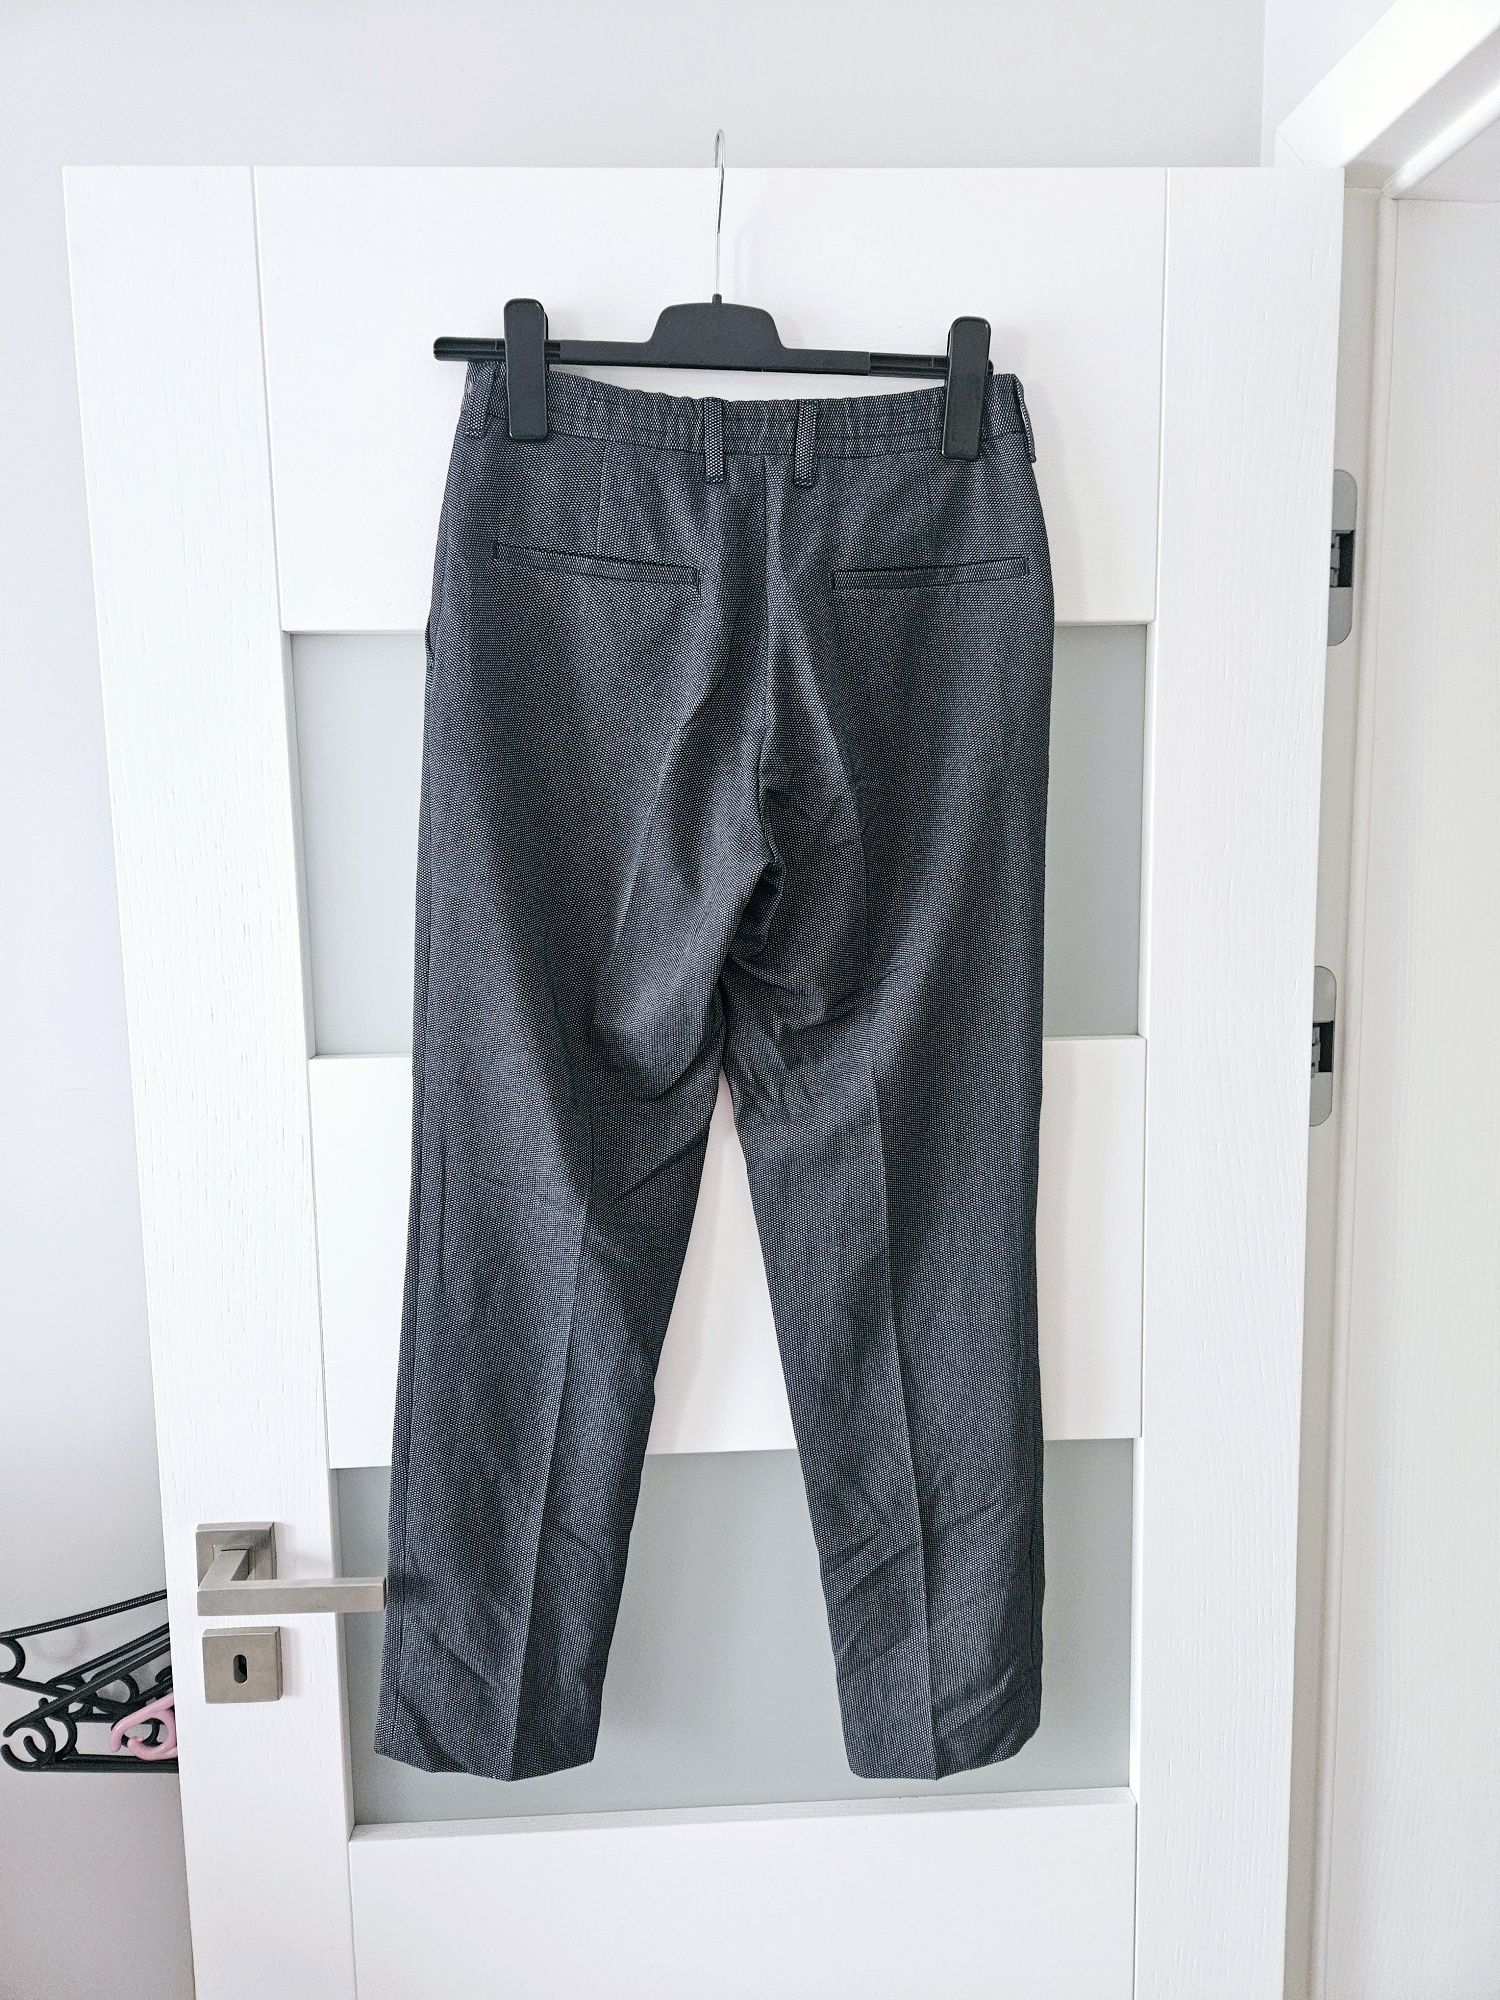 Nowe granatowe spodnie Zara s 36 eleganckie spodnie s